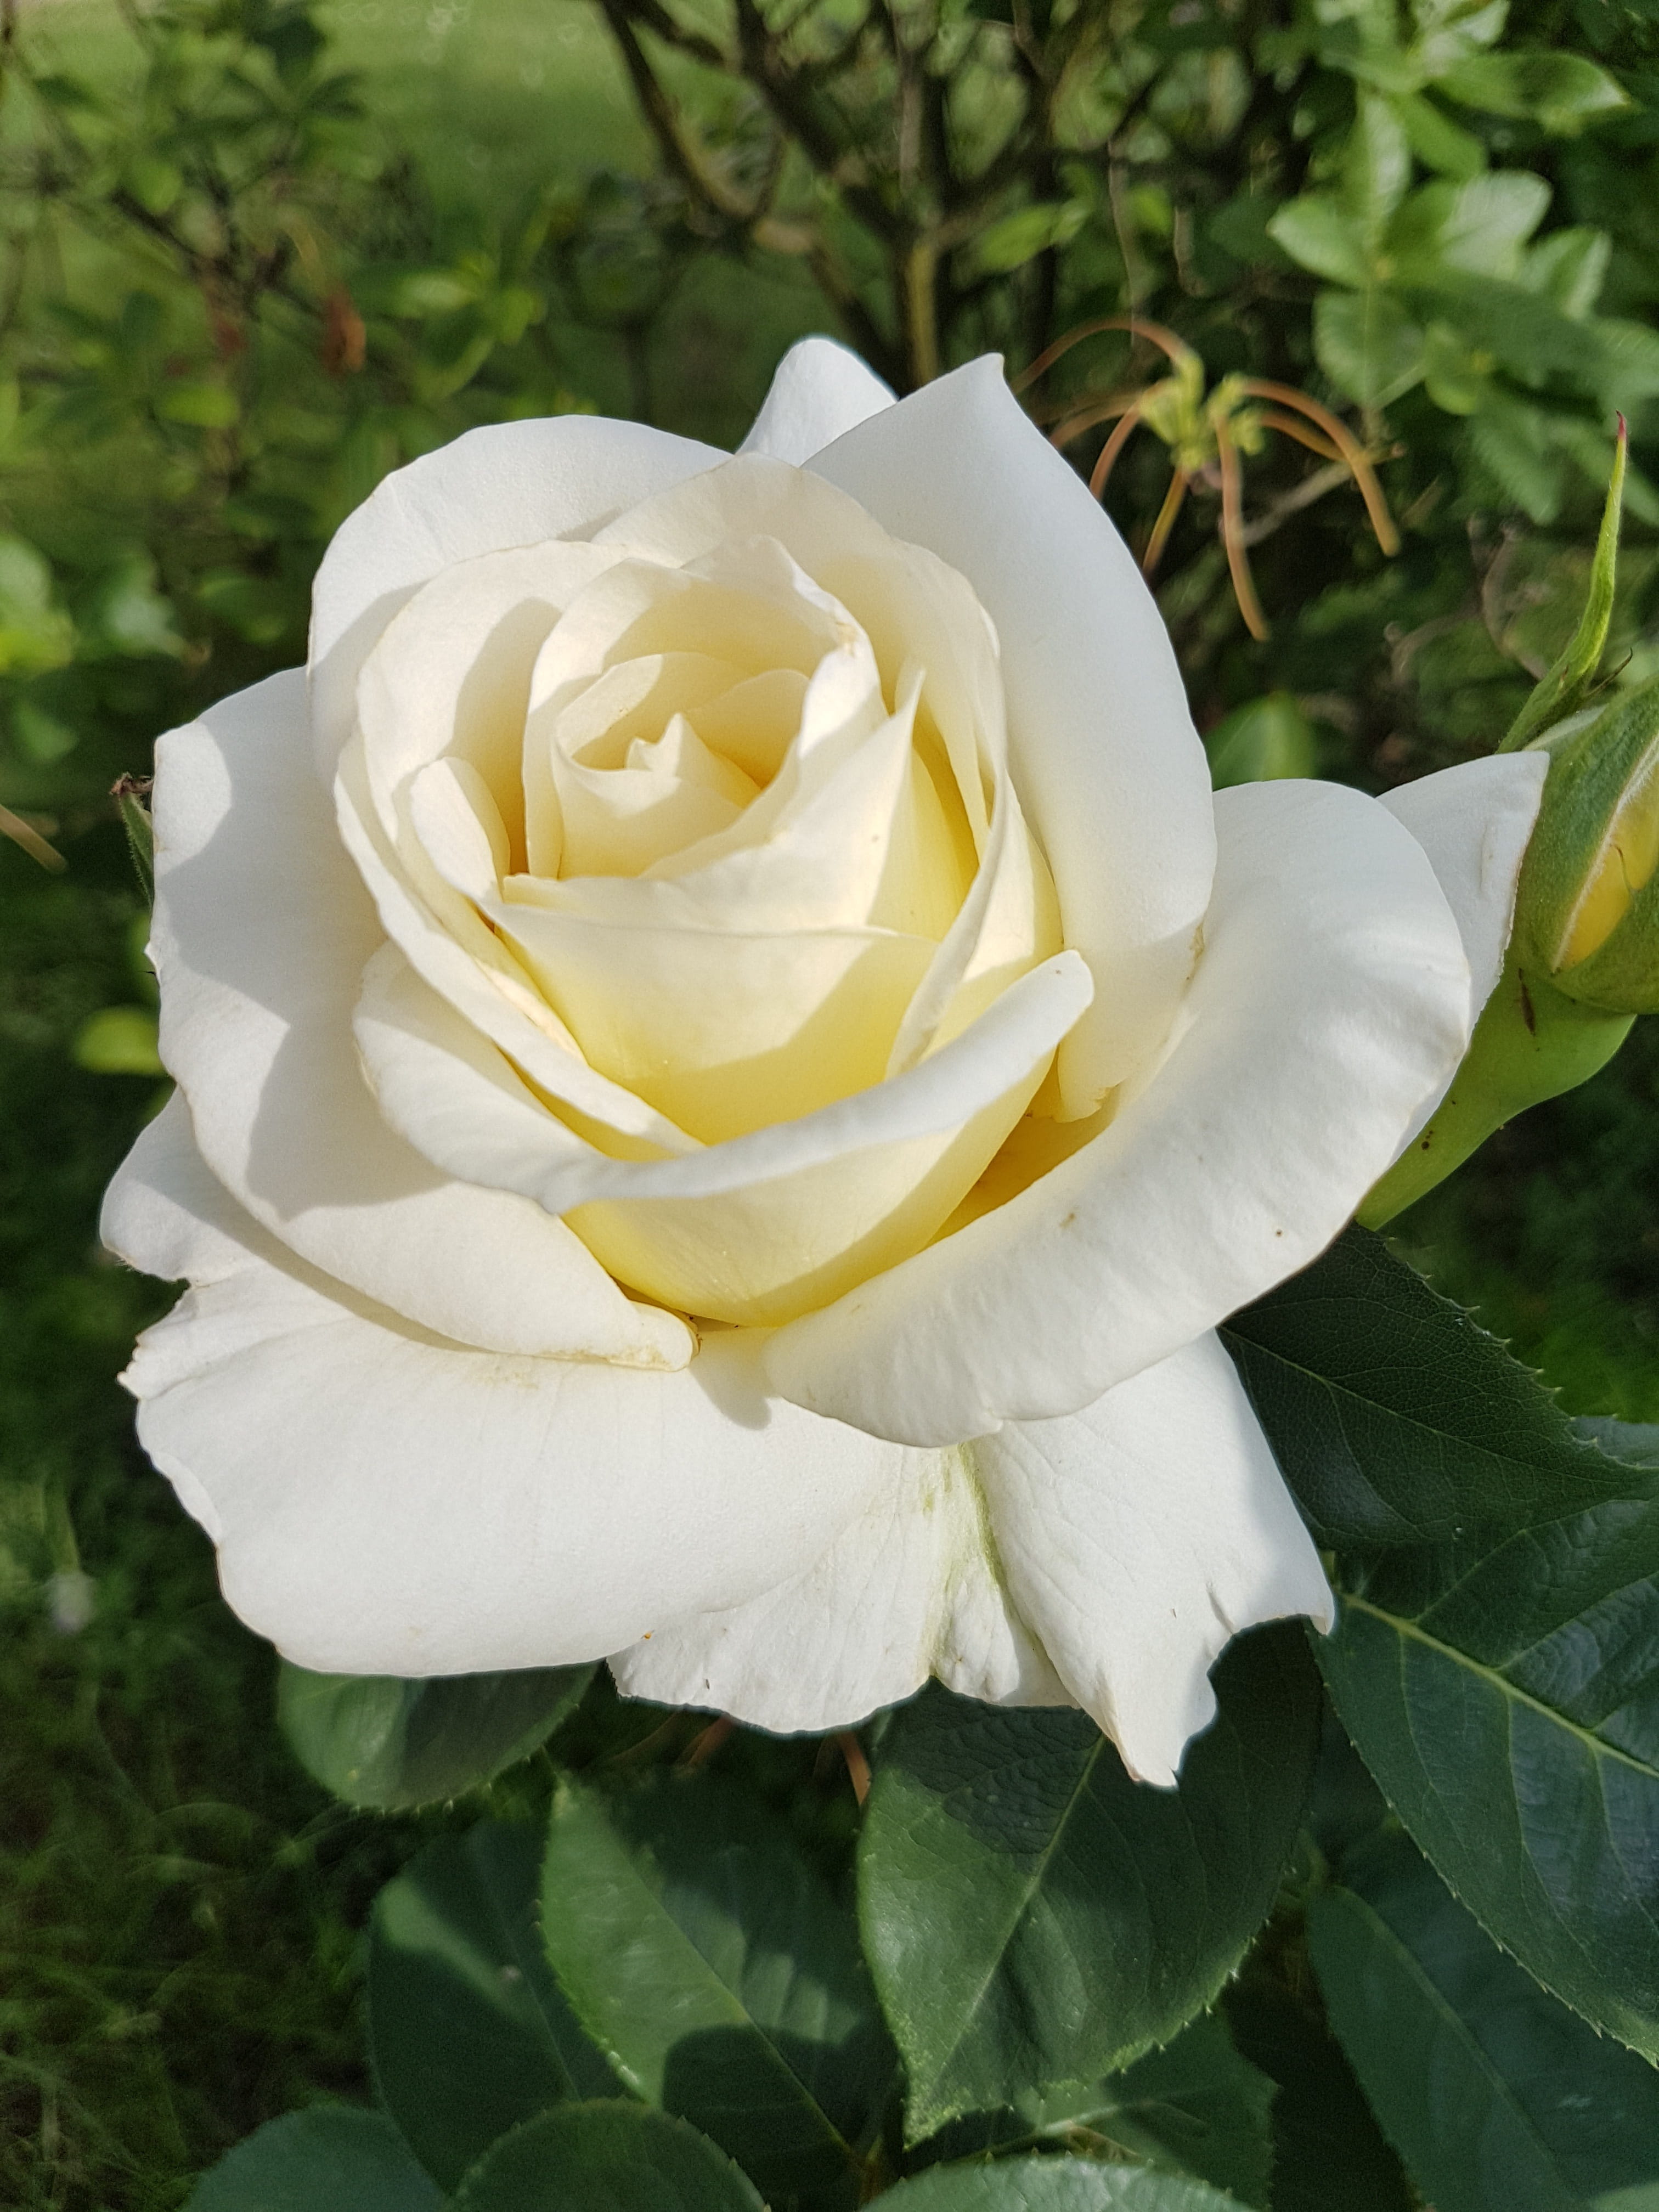 white rose, Flowers, rose - flower, petal, flower head, nature